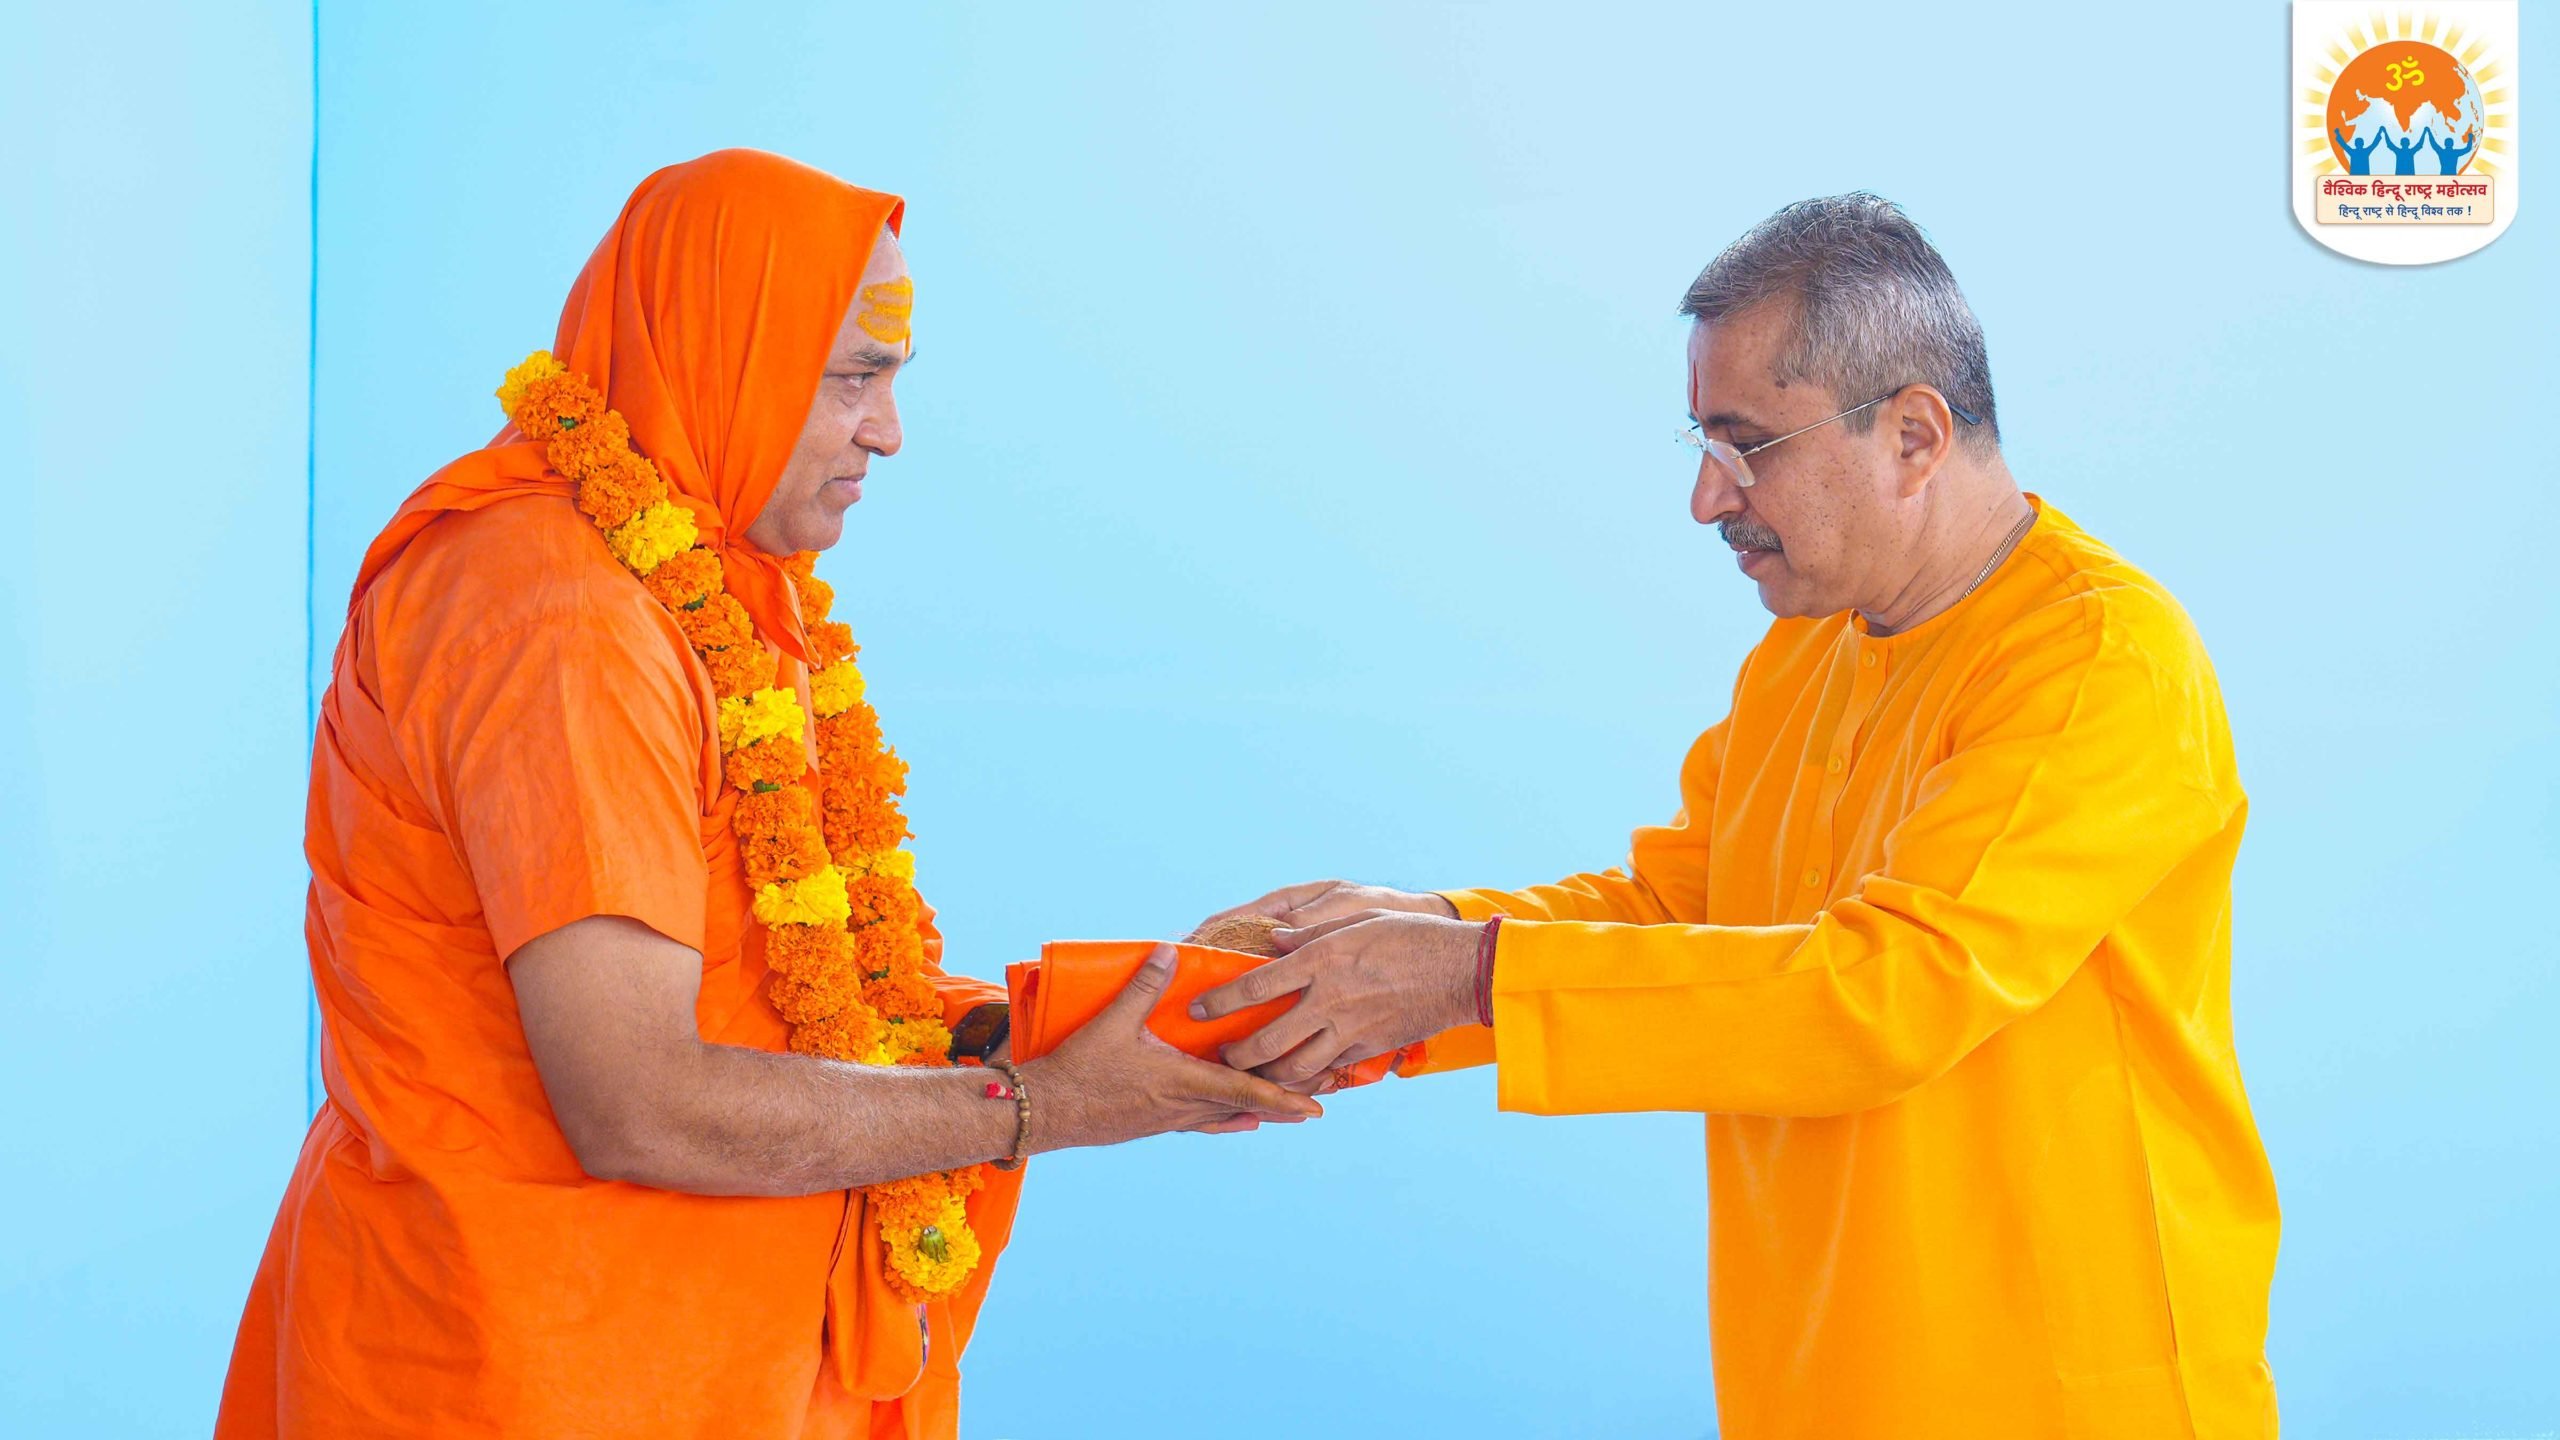 Mahamandleshwar Acharya Swami Pranavanand Saraswati (Founder, Shri Swami Akhandanandji Gurukul Ashram, Indore, Madhya Pradesh) being felicitated by Sadguru Nilesh Singbal (Dharmapracharak Saint, Hindu Janajagruti Samiti)